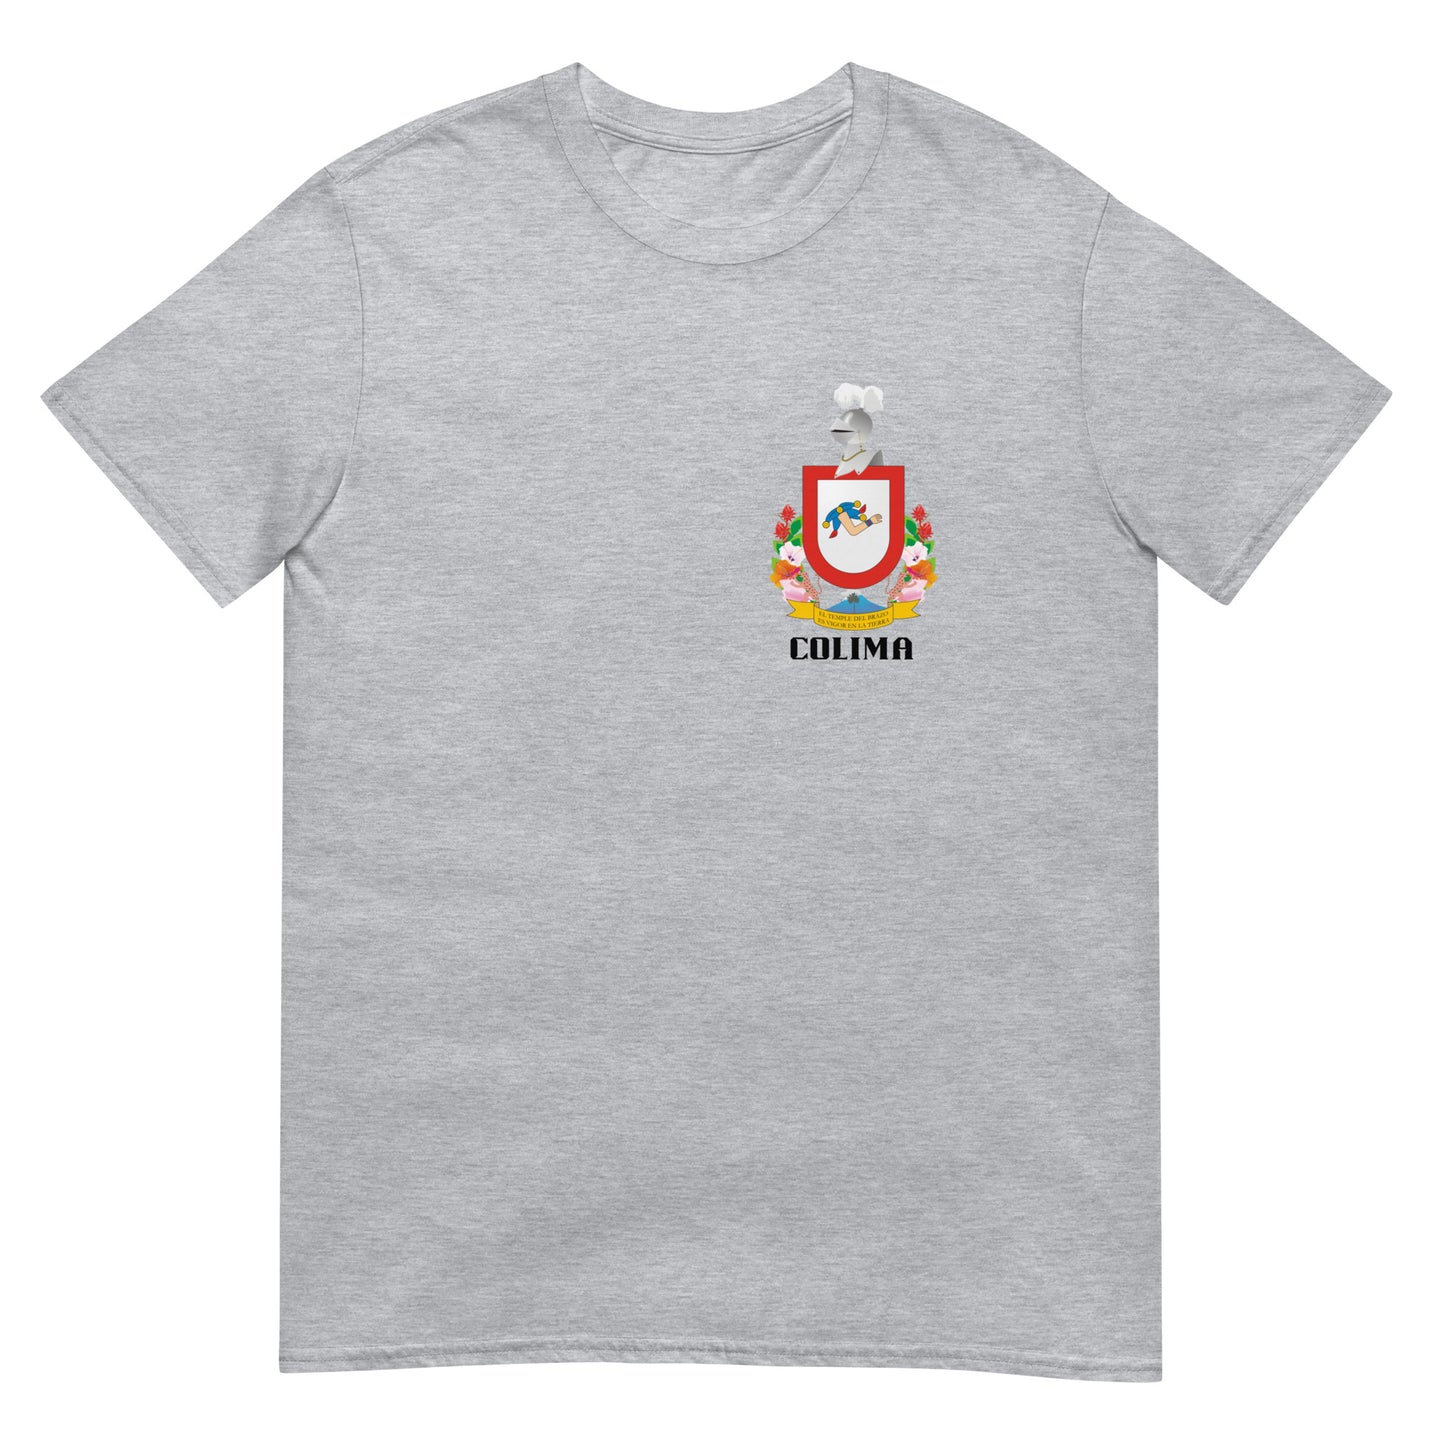 Colima- T-Shirt